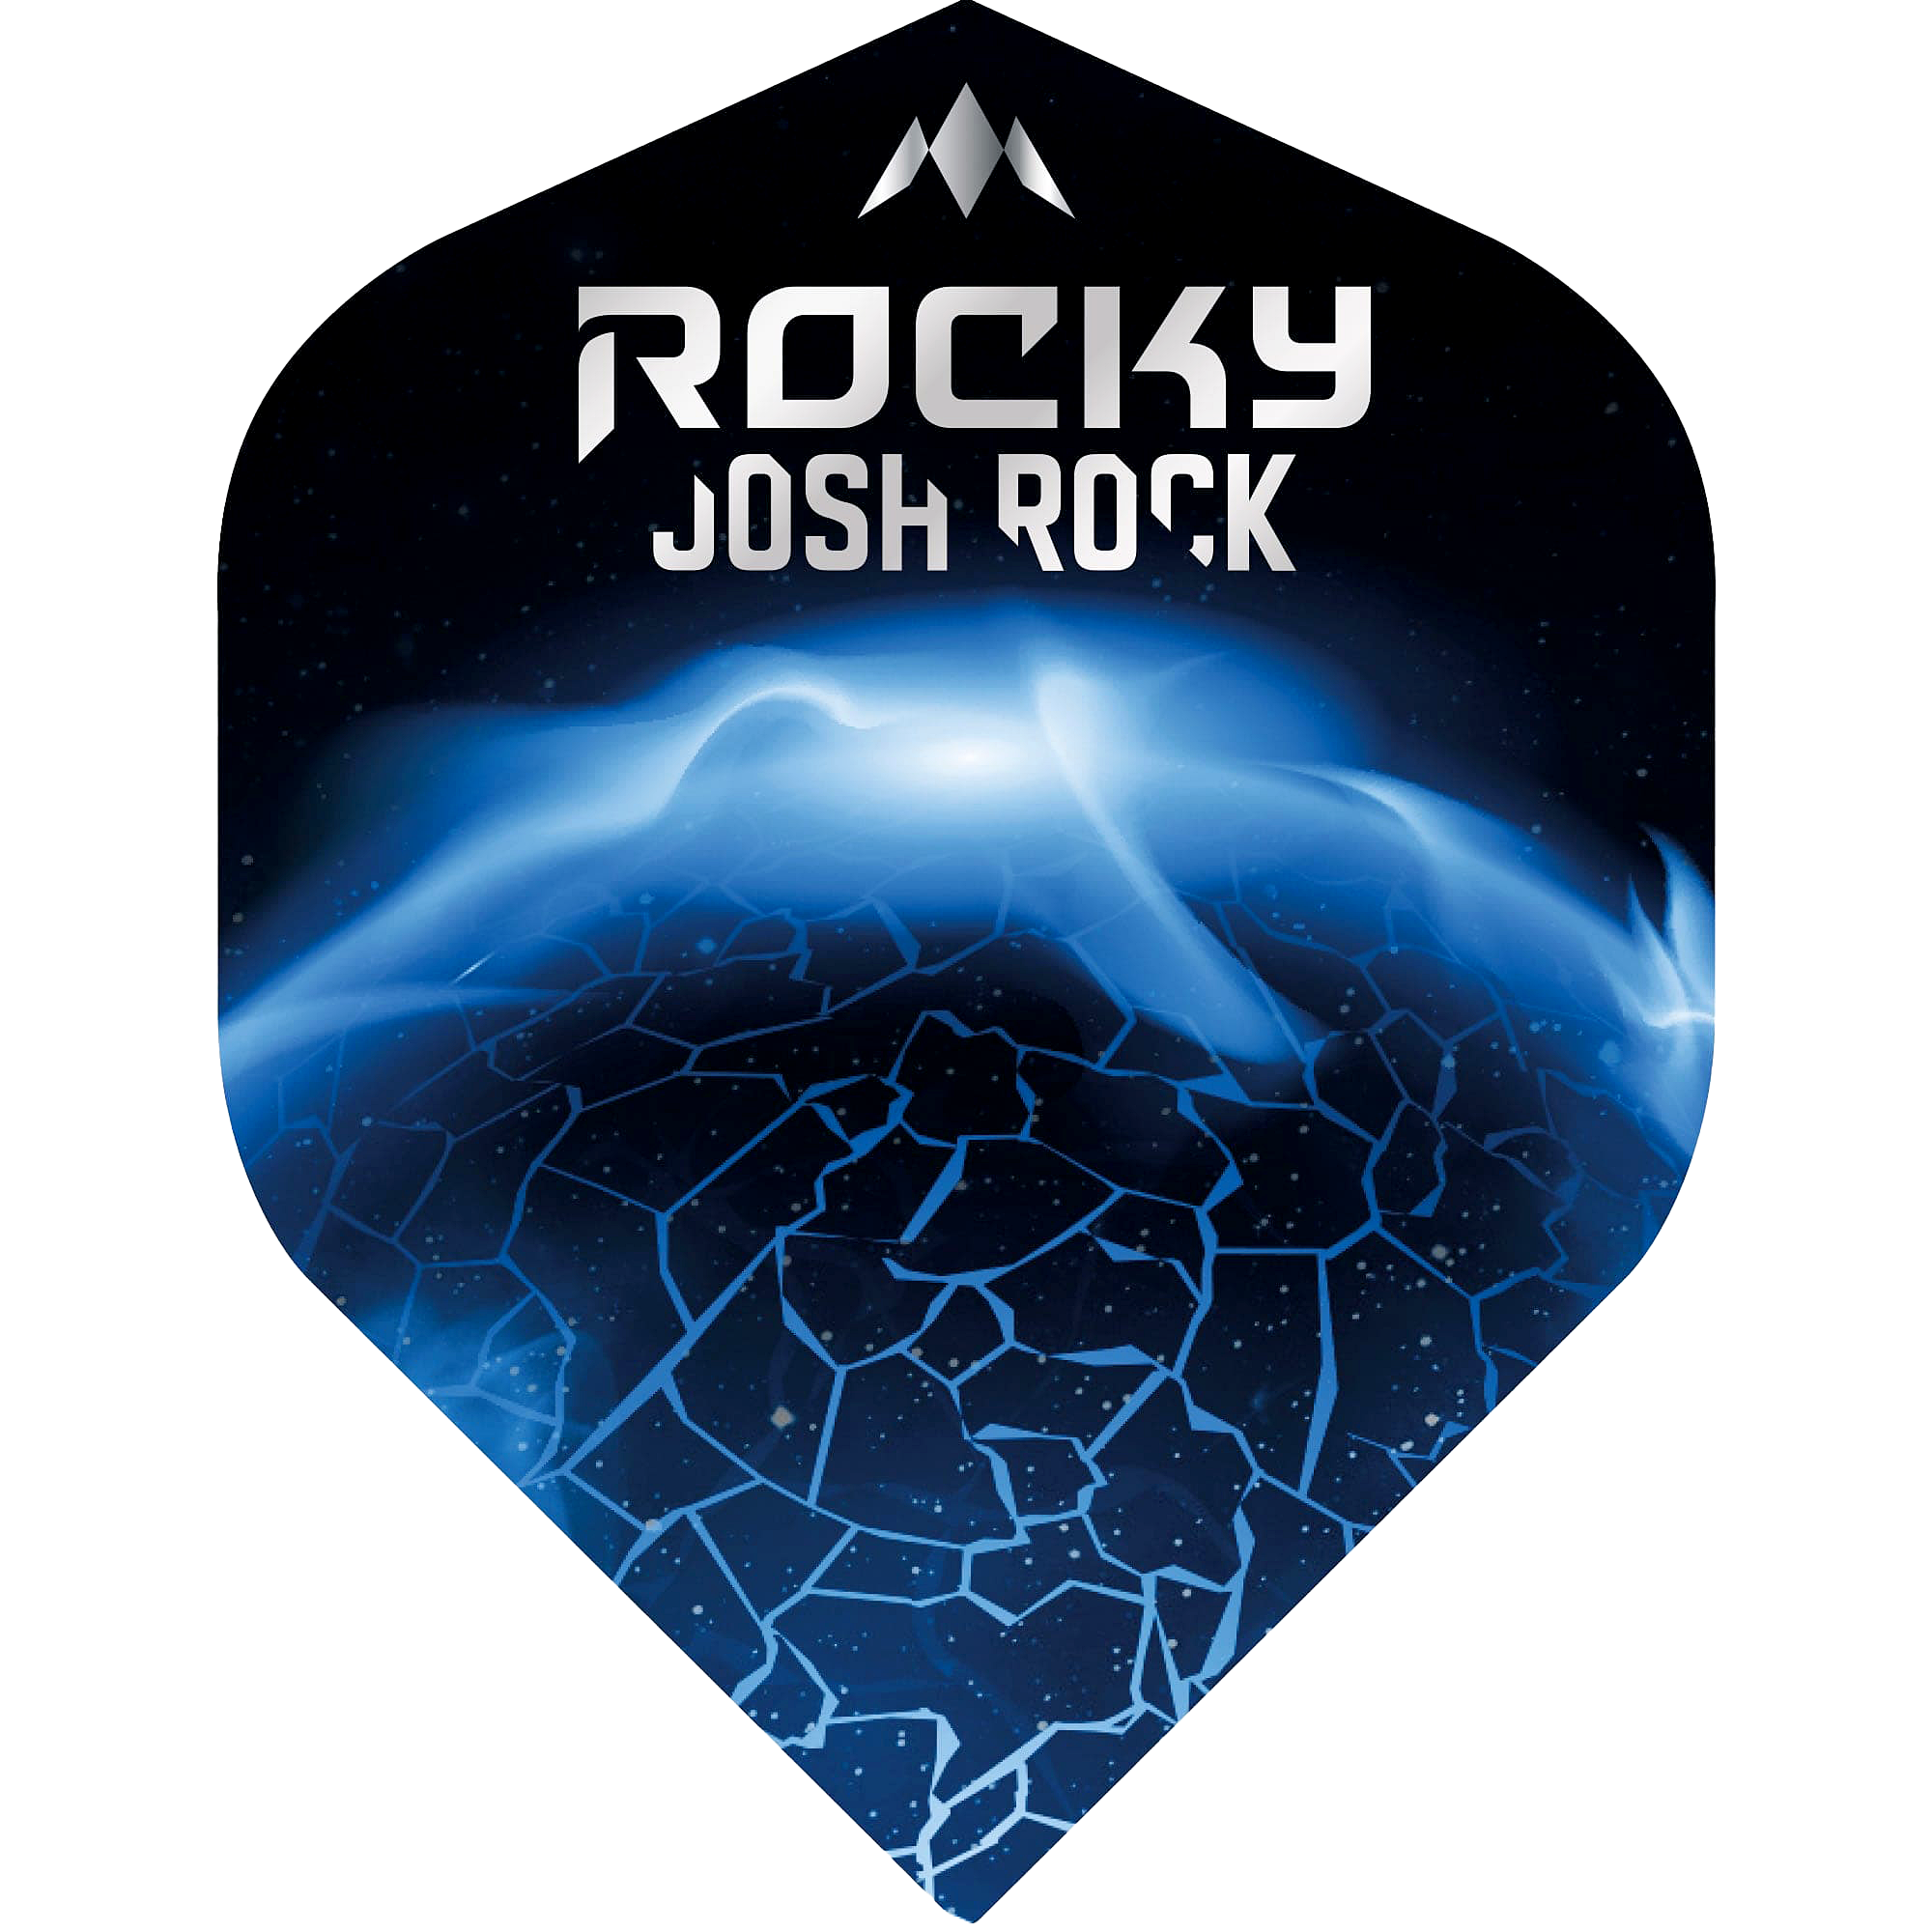 Mission - Josh Rock Flight - Standard